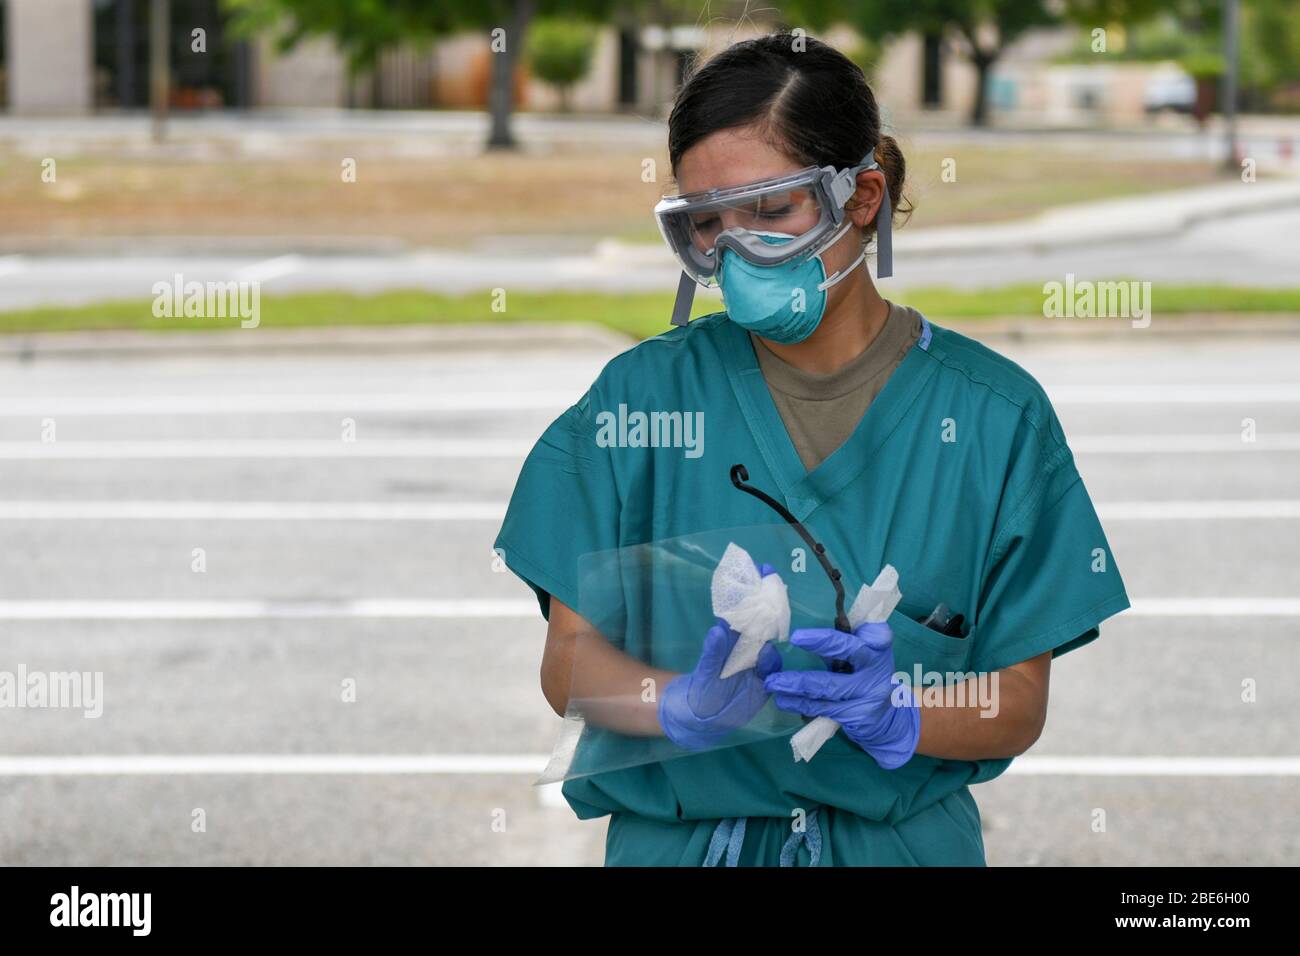 Melanie Domenech, la mayor de la Fuerza Aérea de los Estados Unidos, limpia su máscara protectora después de haber realizado pruebas de detección de pacientes para COVID-19 en Hurlburt Field el 7 de abril de 2020 en Mary Esther, Florida. Foto de stock